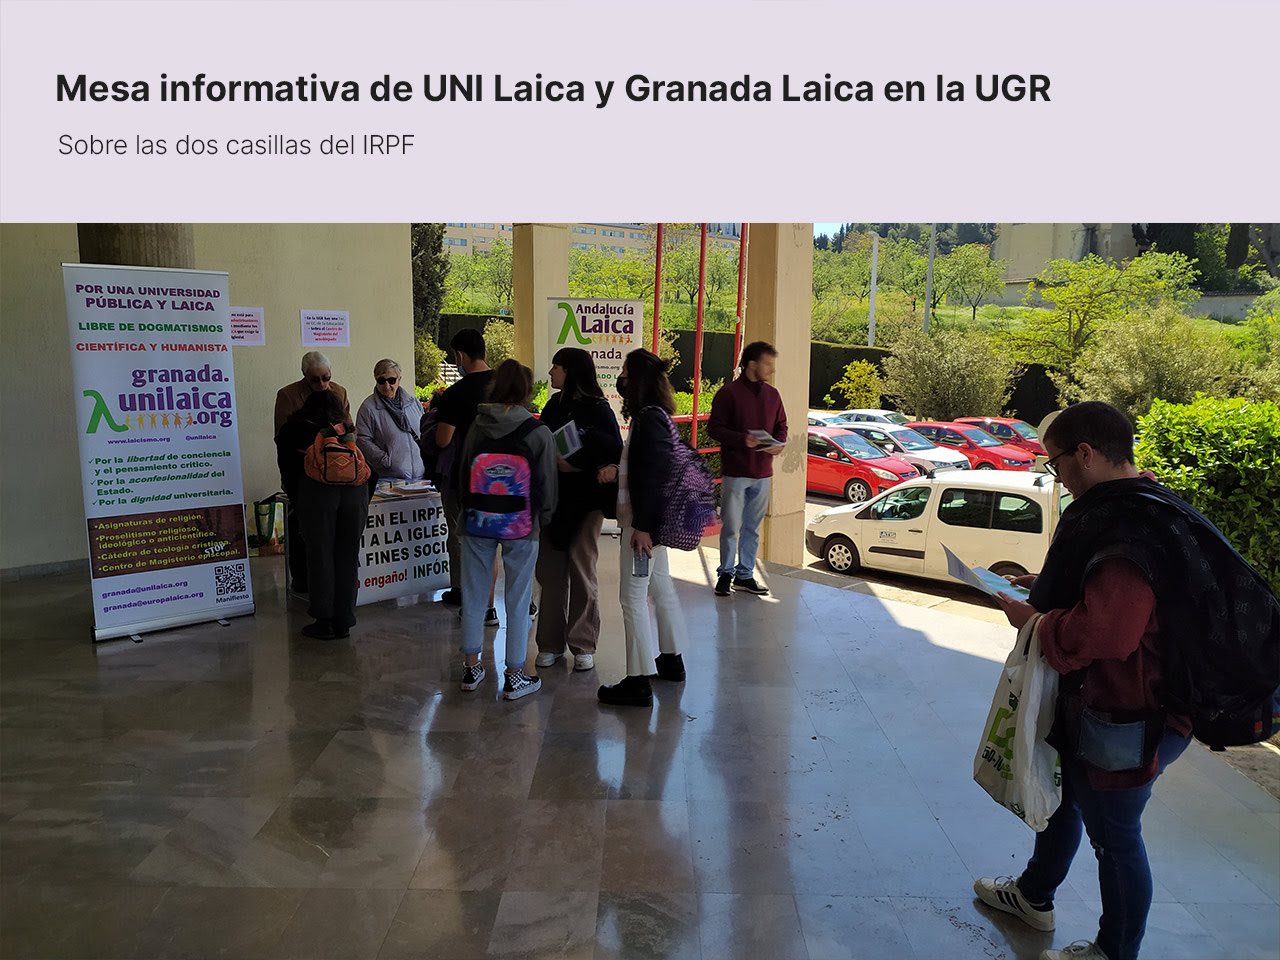 Mesa informativa de UNI Laica y Granada Laica en la Facultad de Ciencias de la Educación de la Universidad de Granada